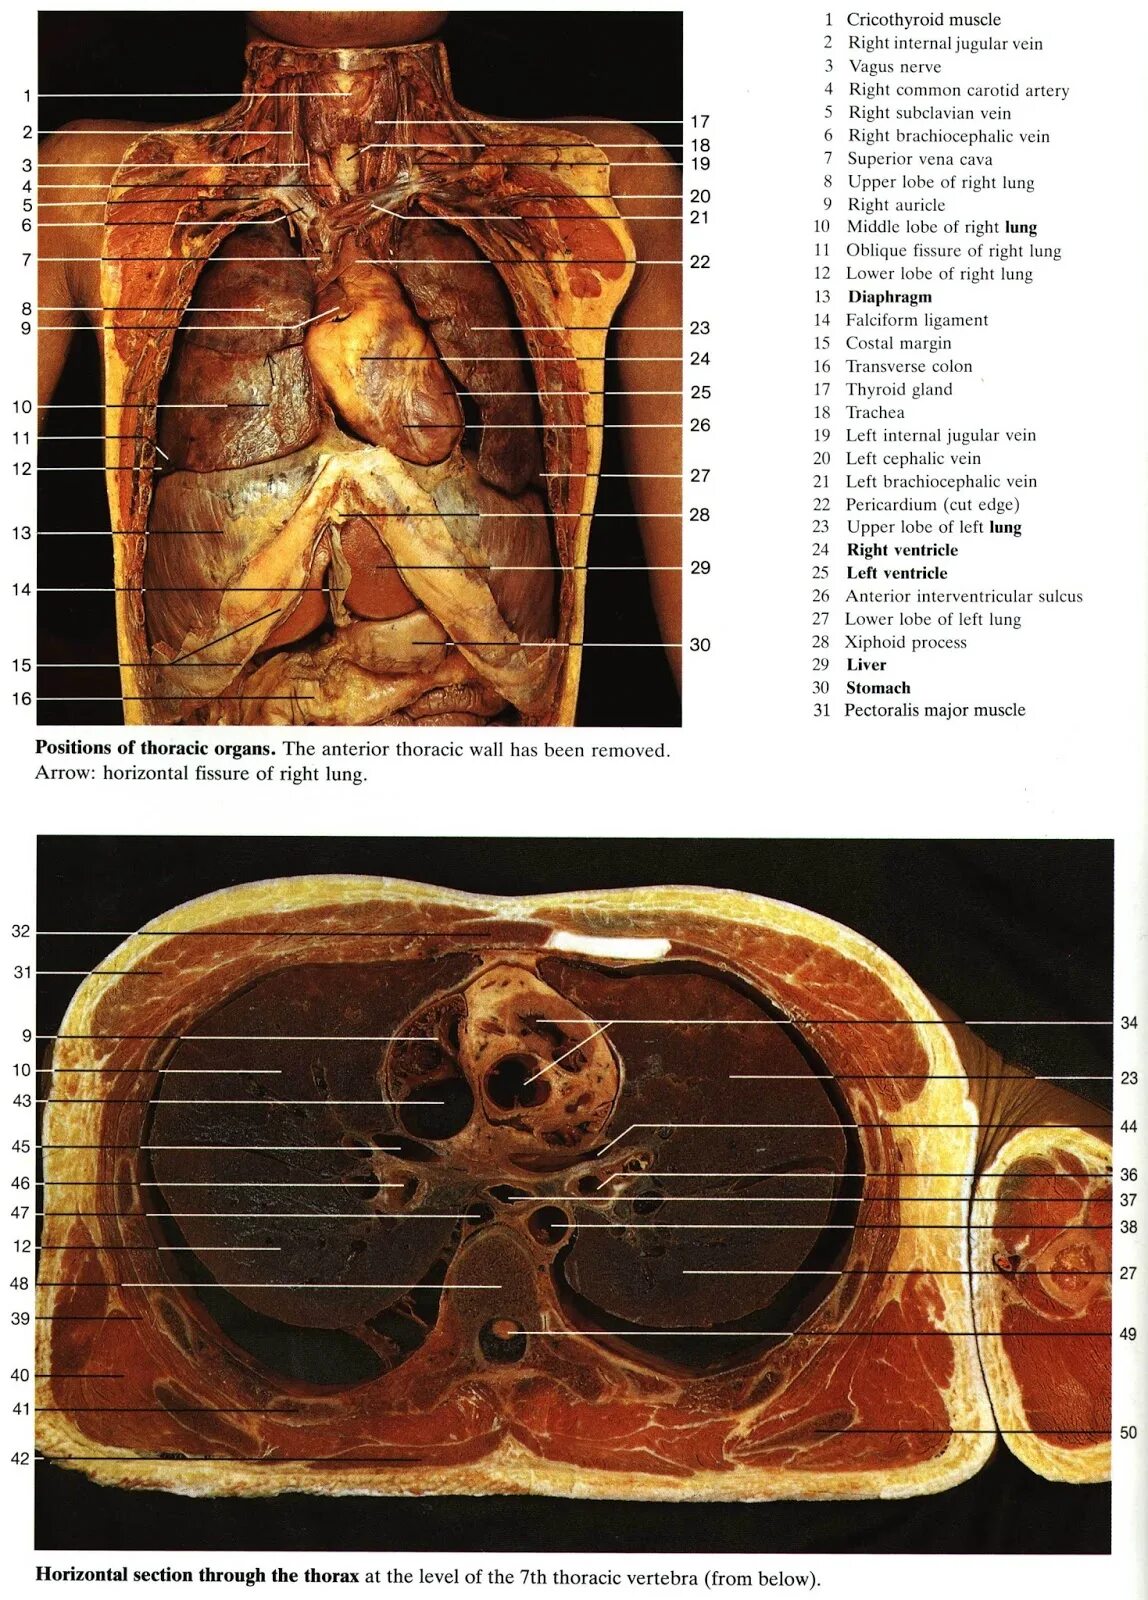 Анатомия грудной клетки внутренние органы. Анатомический атлас грудной клетки. Строение грудной клетки женщины анатомия с органами. Грудная клетка человека анатомический атлас.